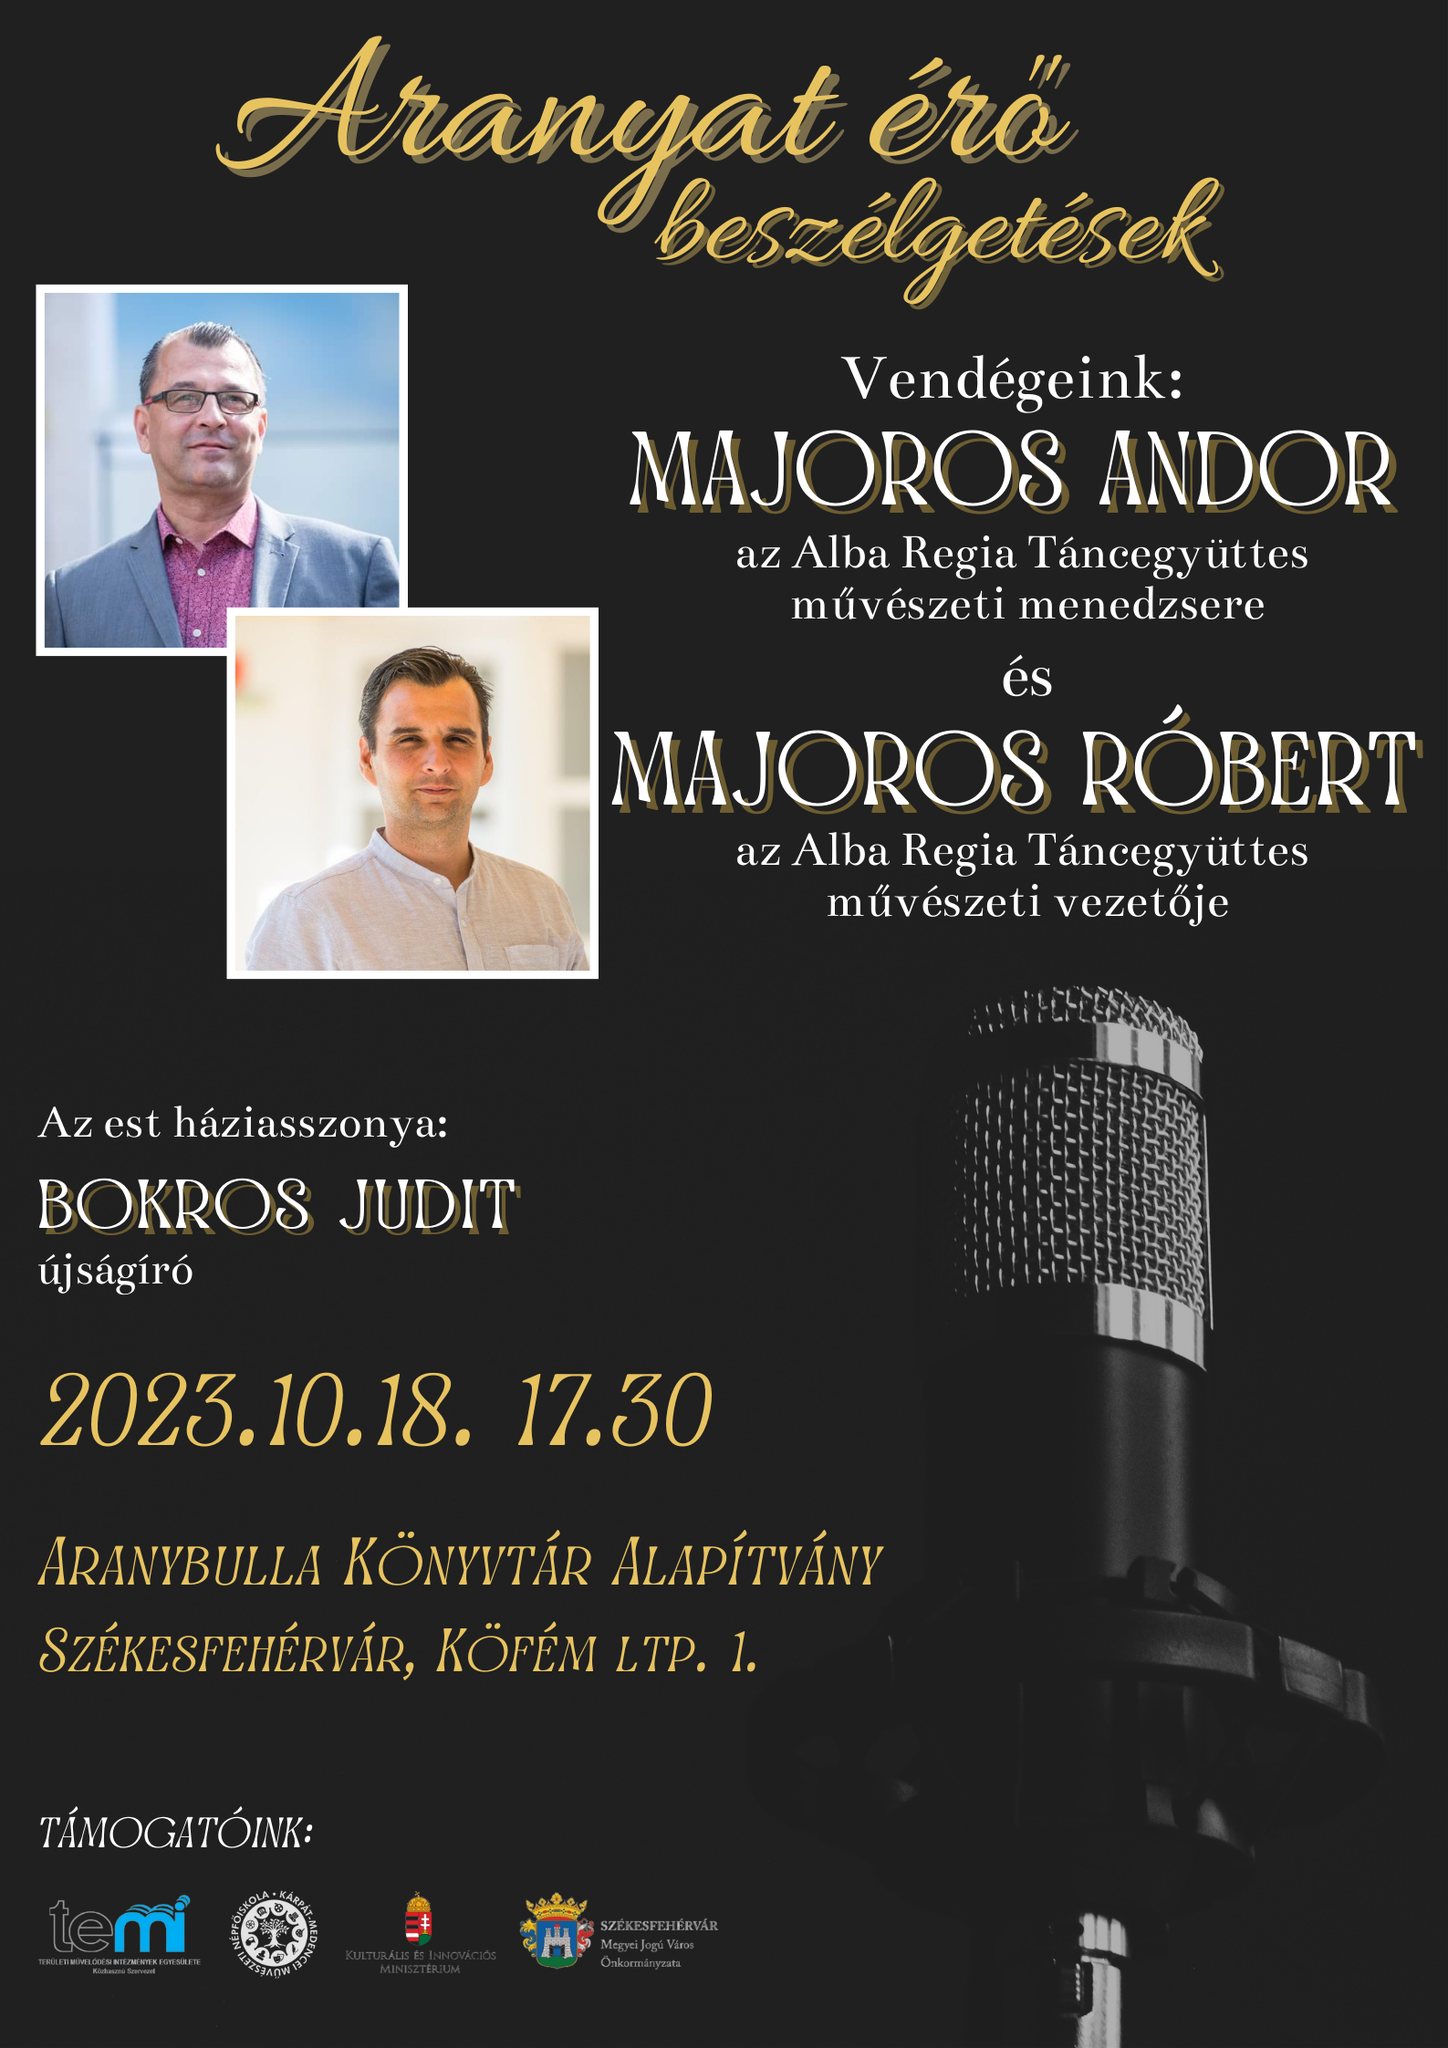 Majoros Andor és Majoros Róbert lesznek a vendégek az október 18-i Aranyat érő beszélgetések keretében